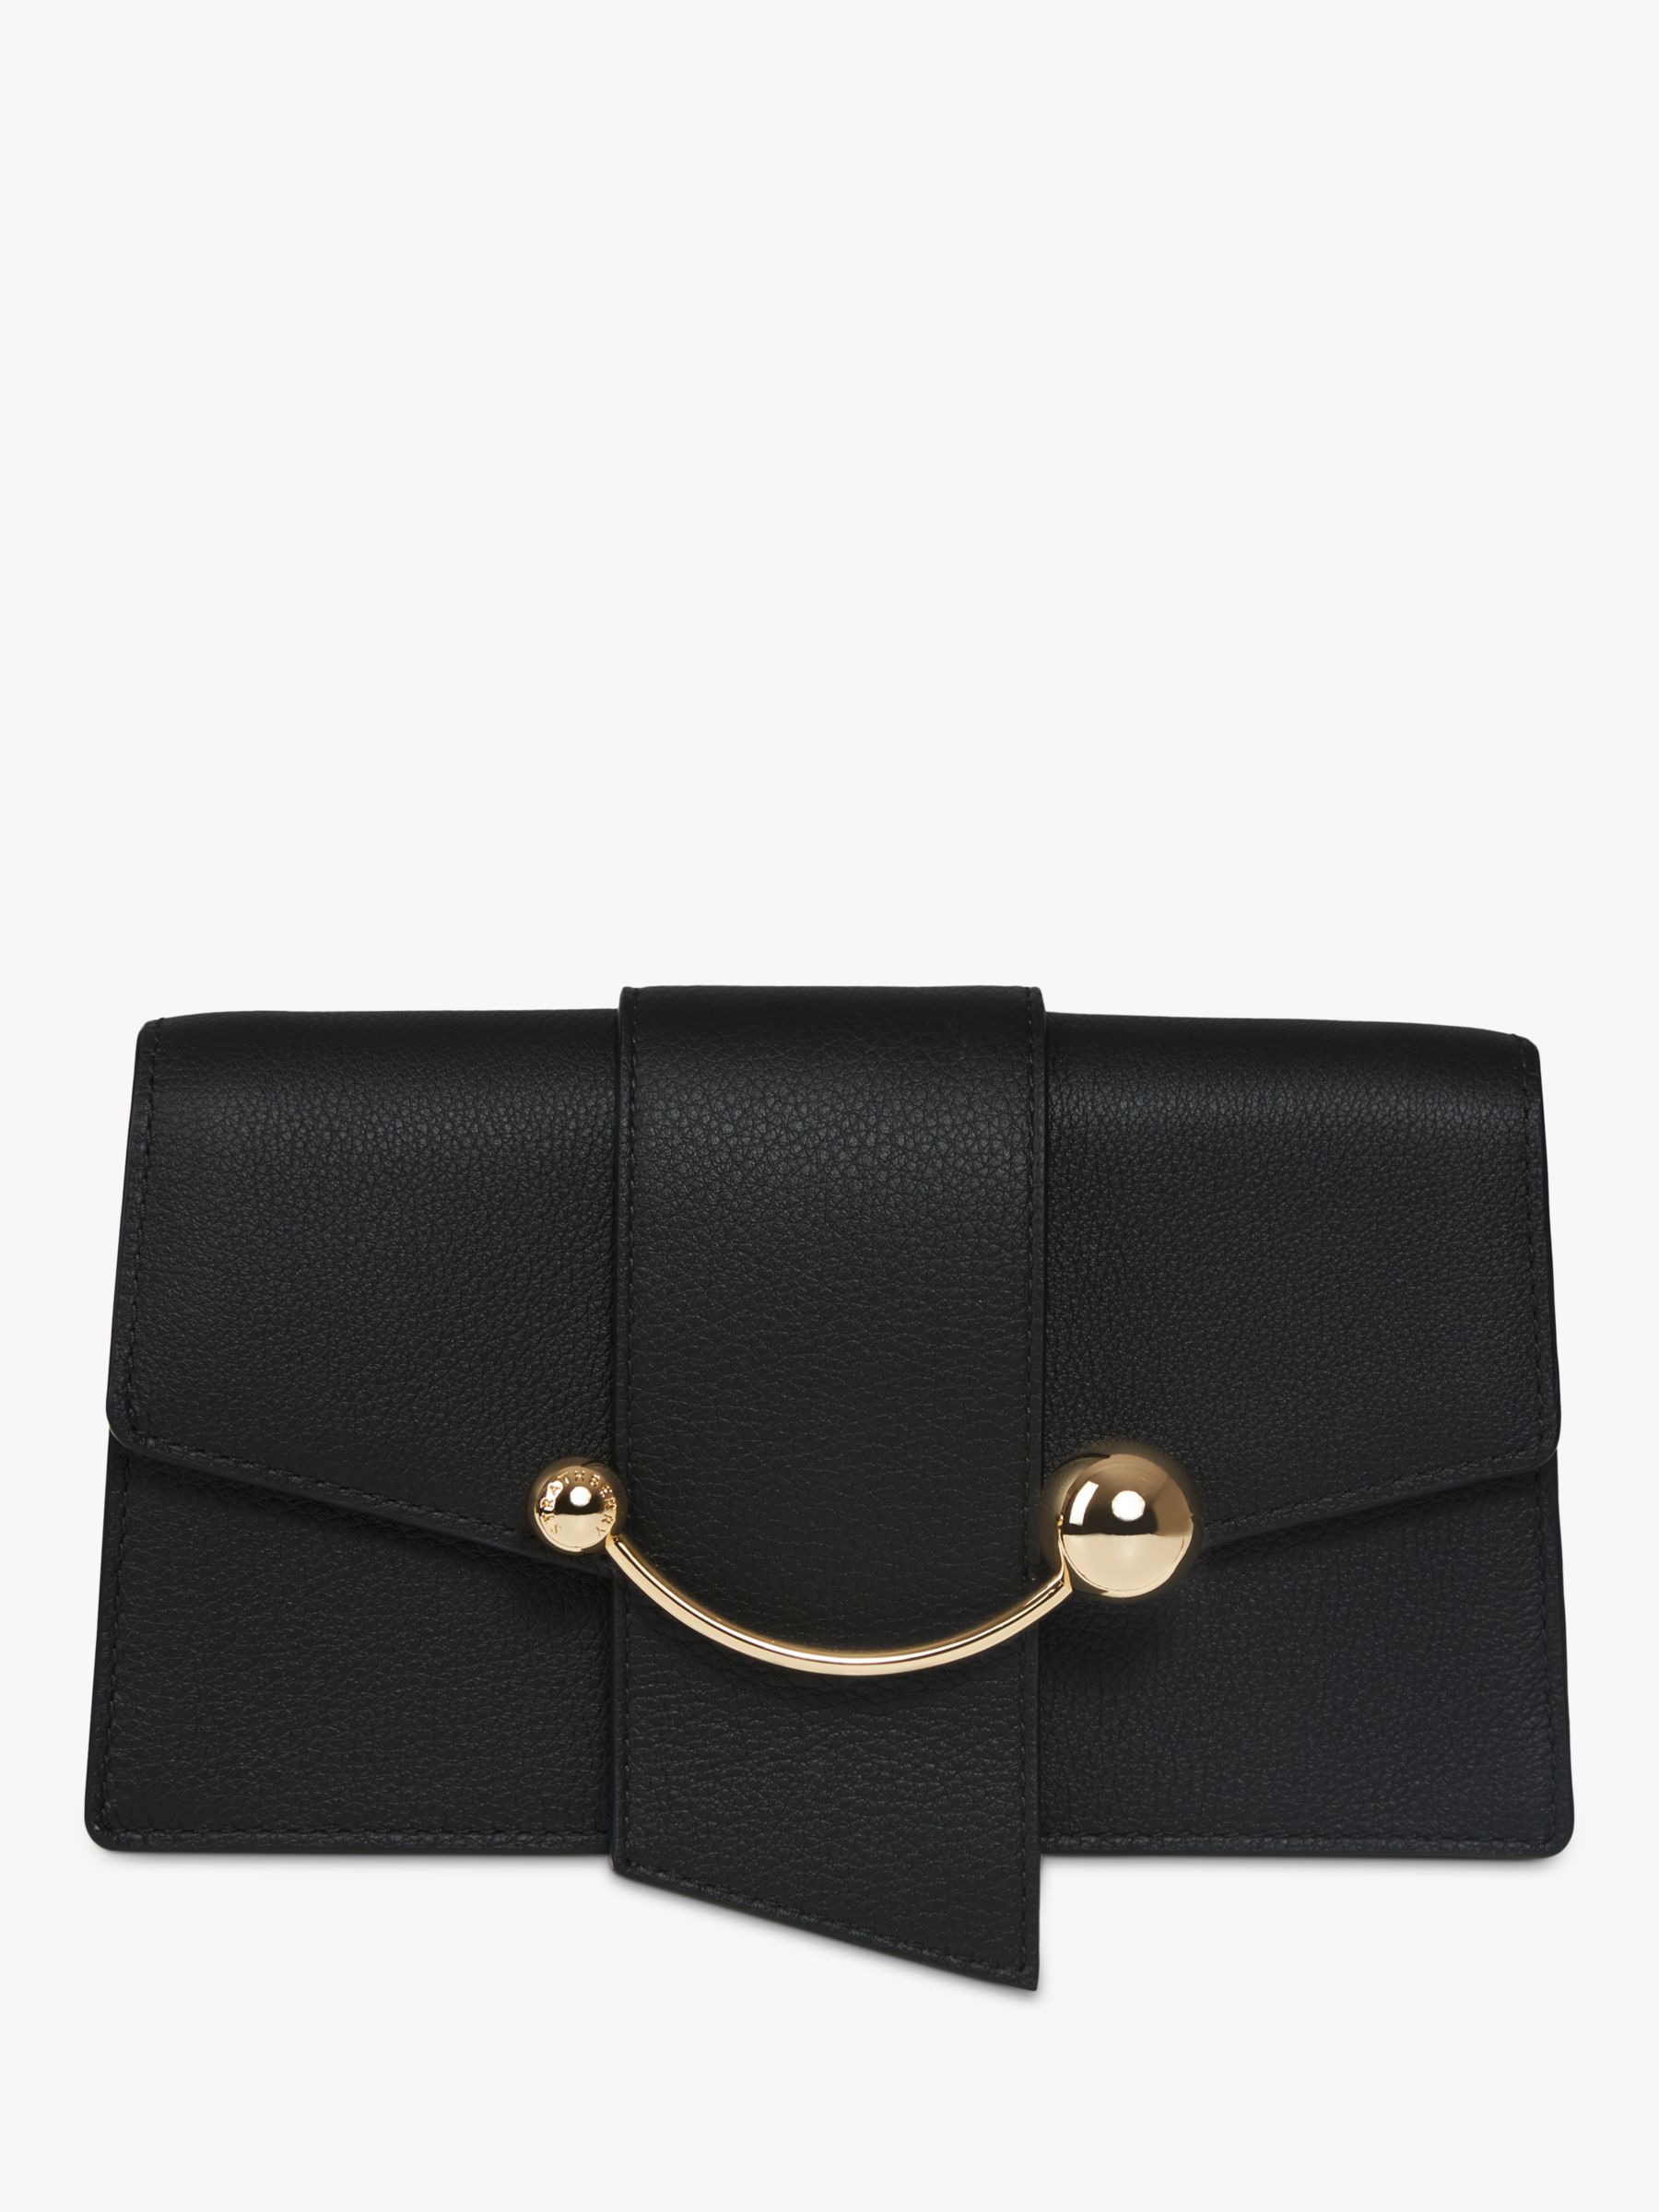 Strathberry Crescent Leather Shoulder Bag, Black at John Lewis & Partners